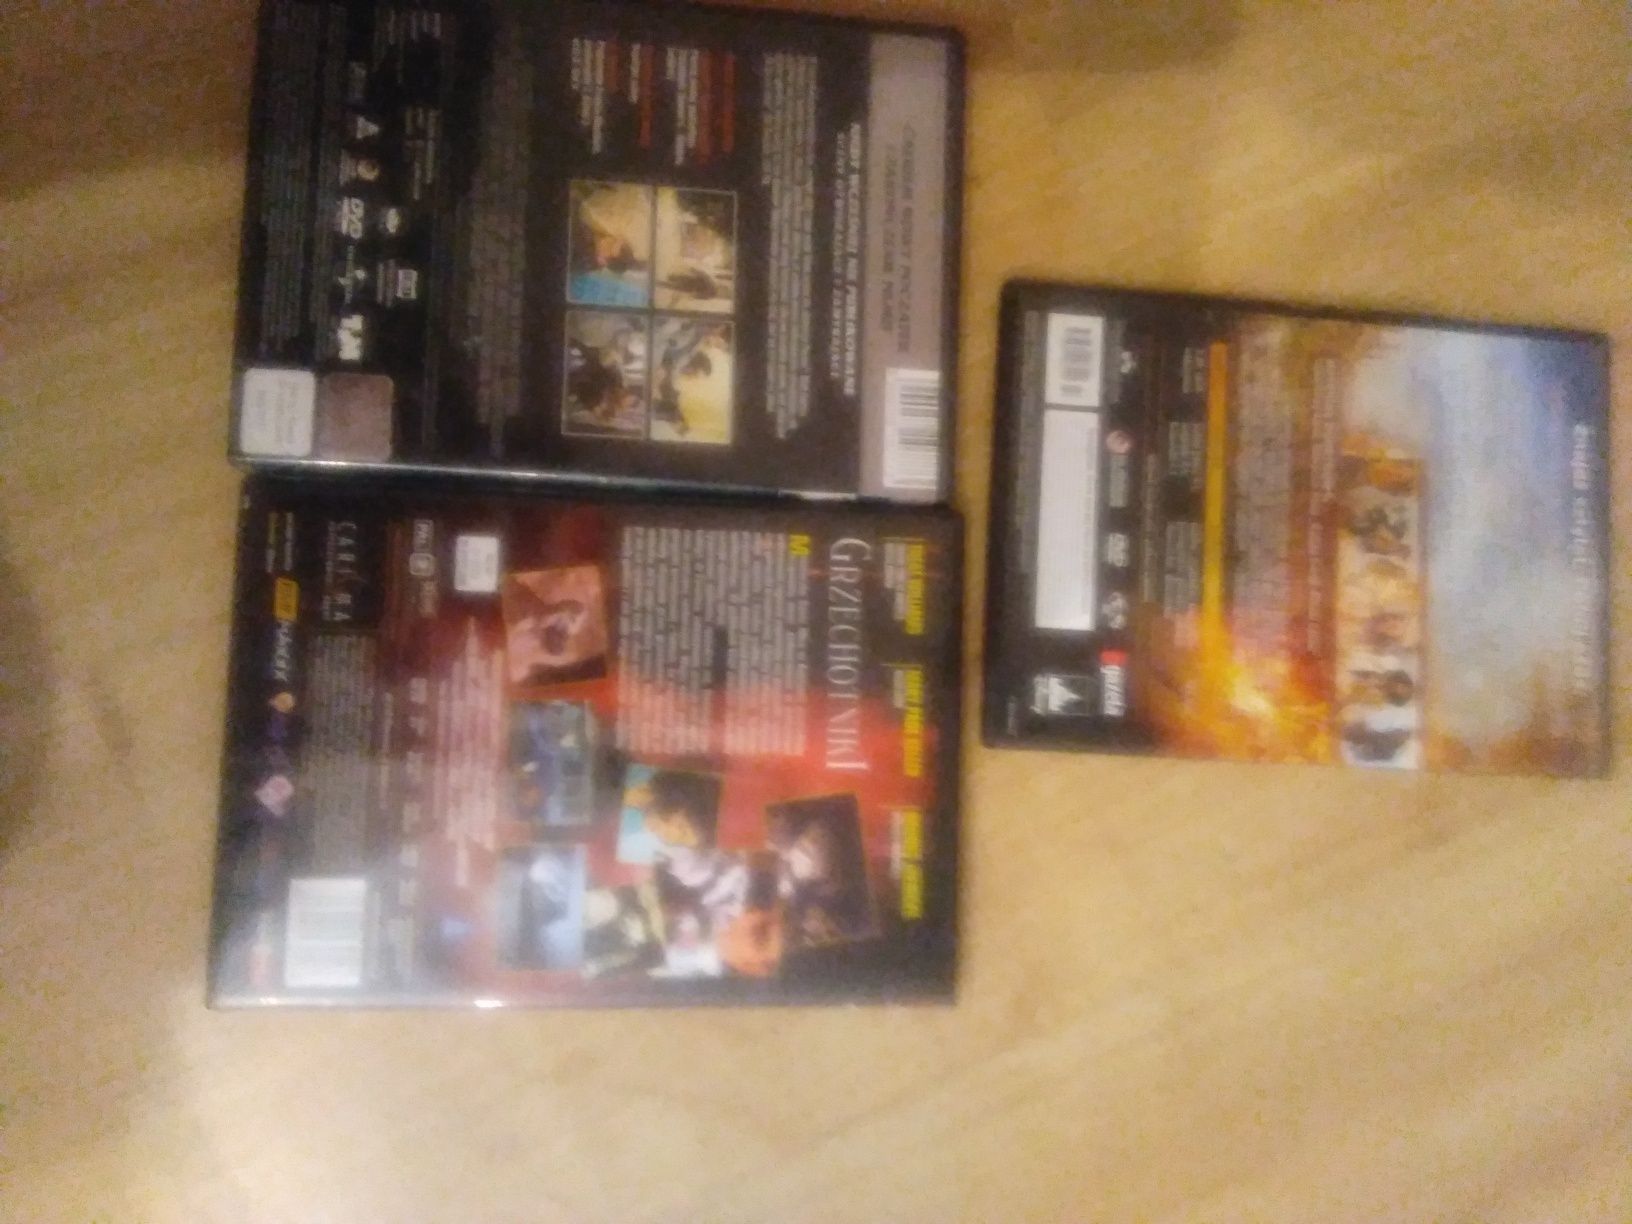 DVD filmy zestaw 3 filmy